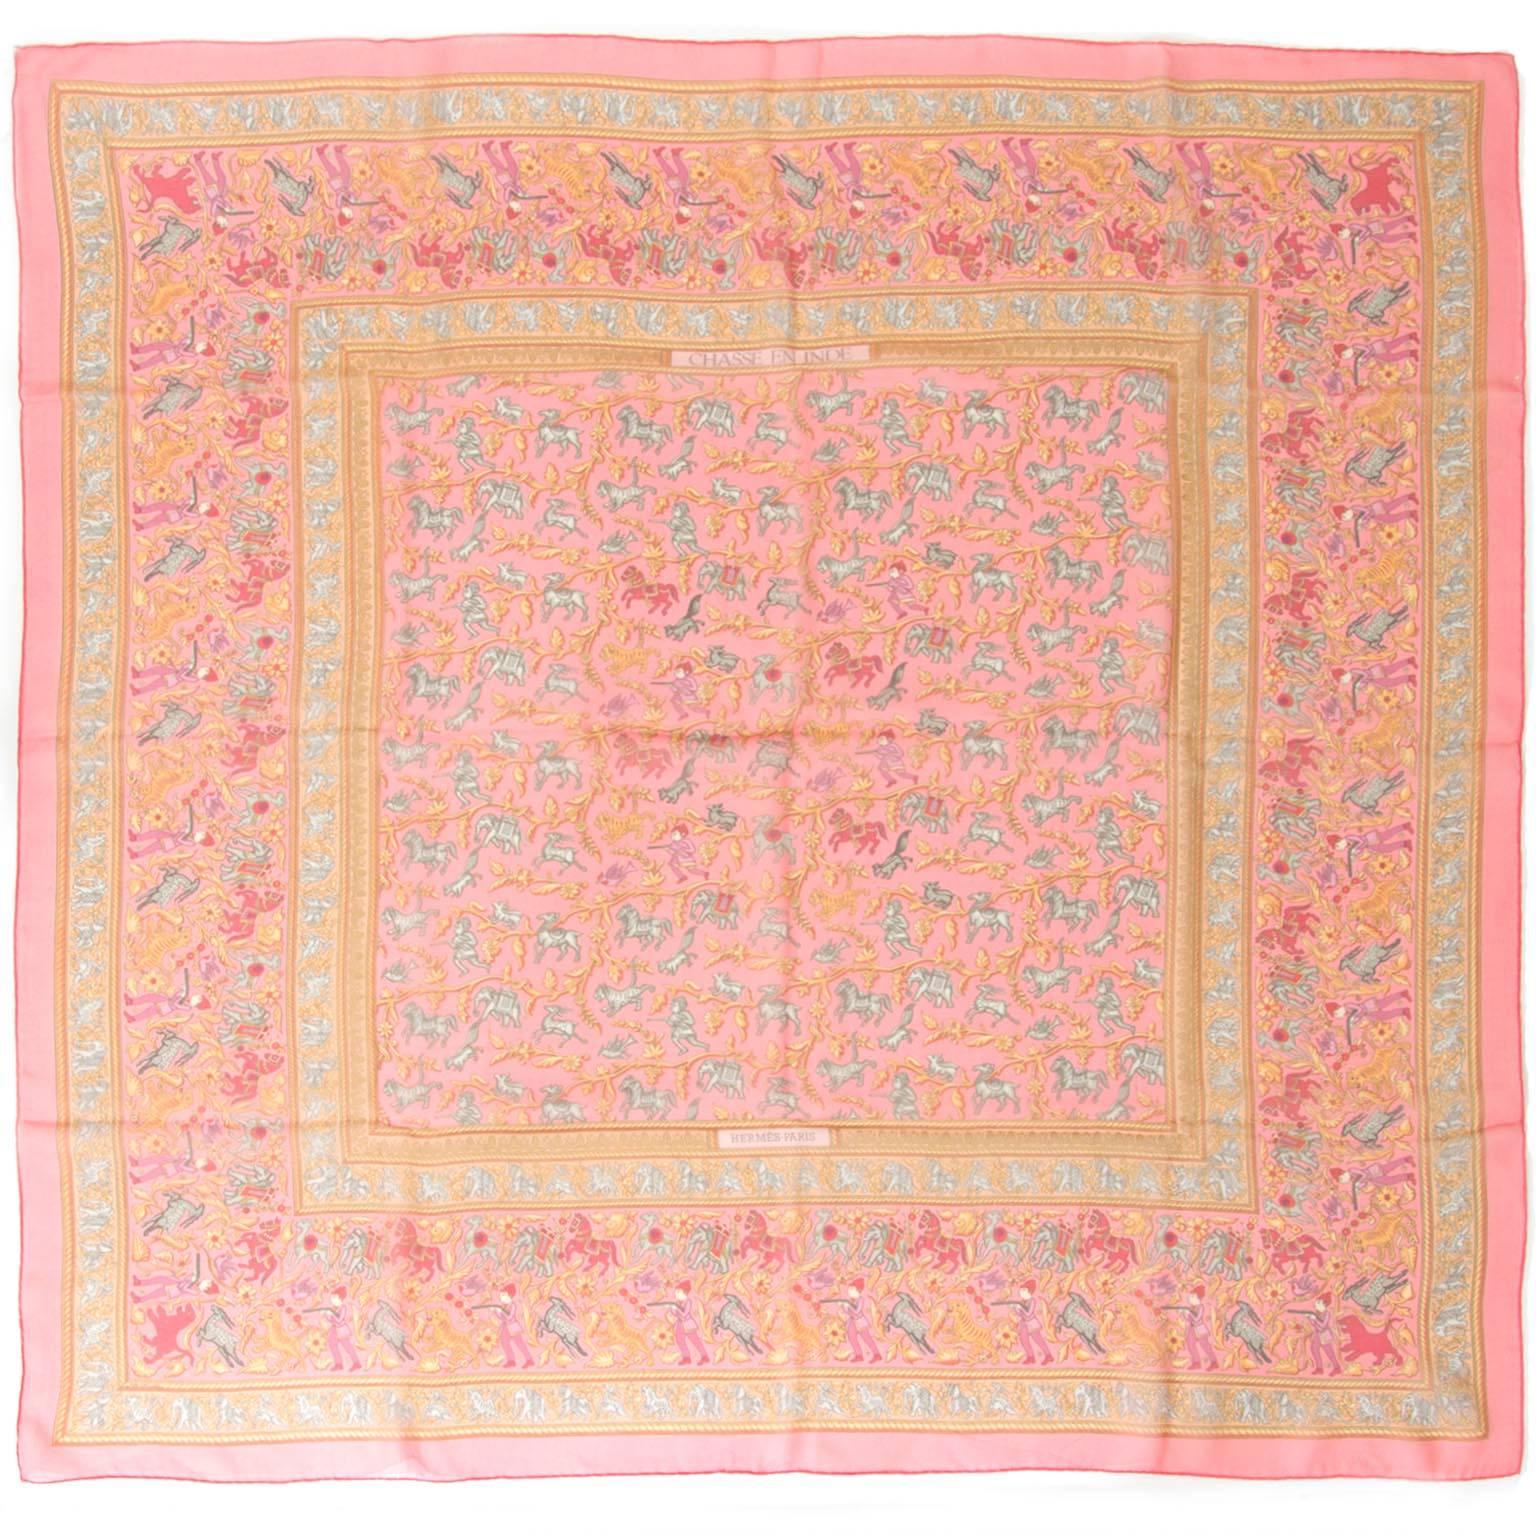 Hermès mousseline silk scarf in pink shades. 

100% silk. 